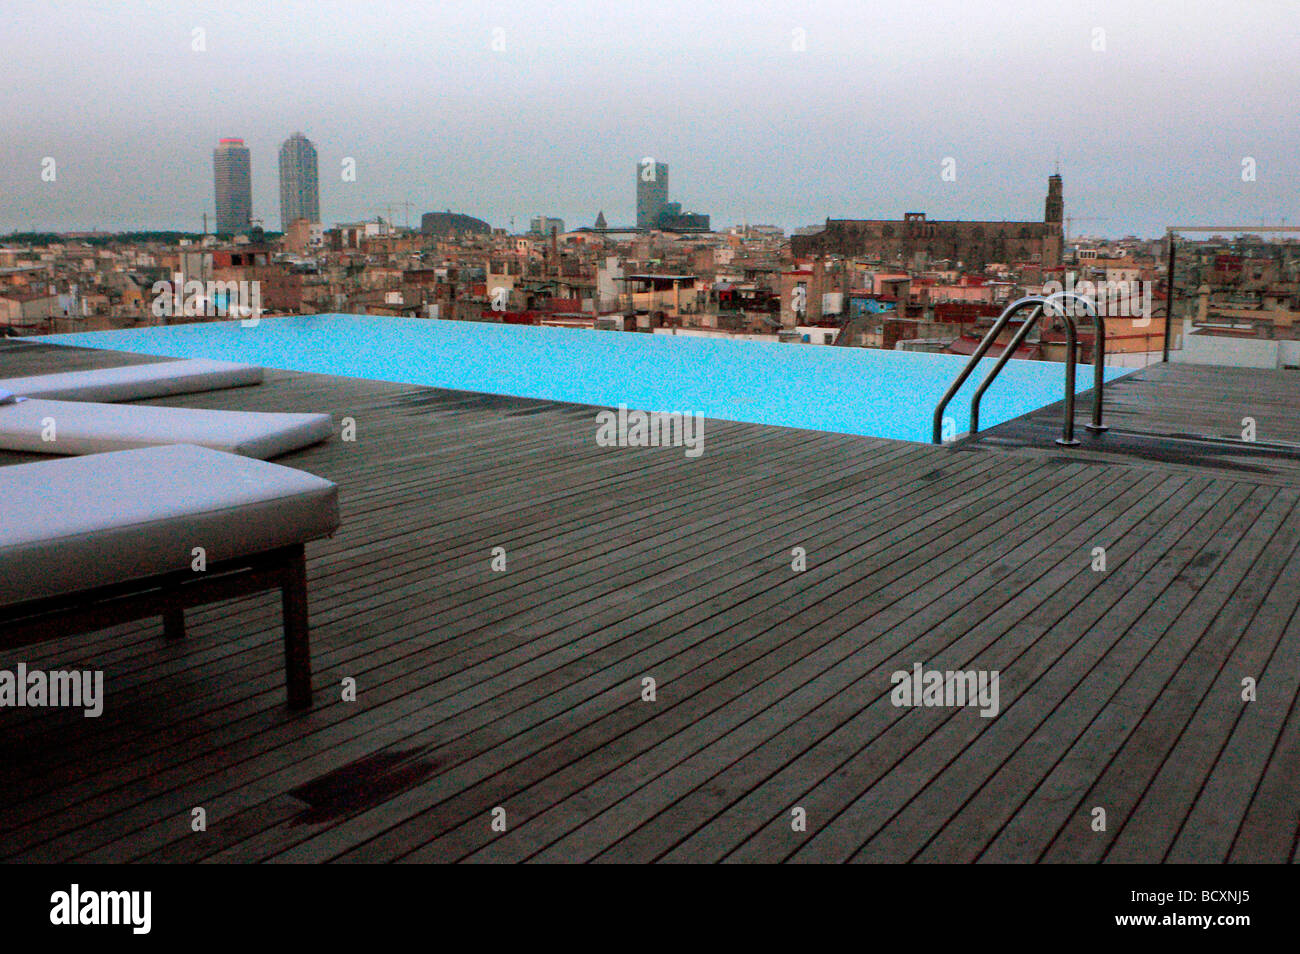 Piscina en el tejado de un hotel, Barcelona, España Foto de stock